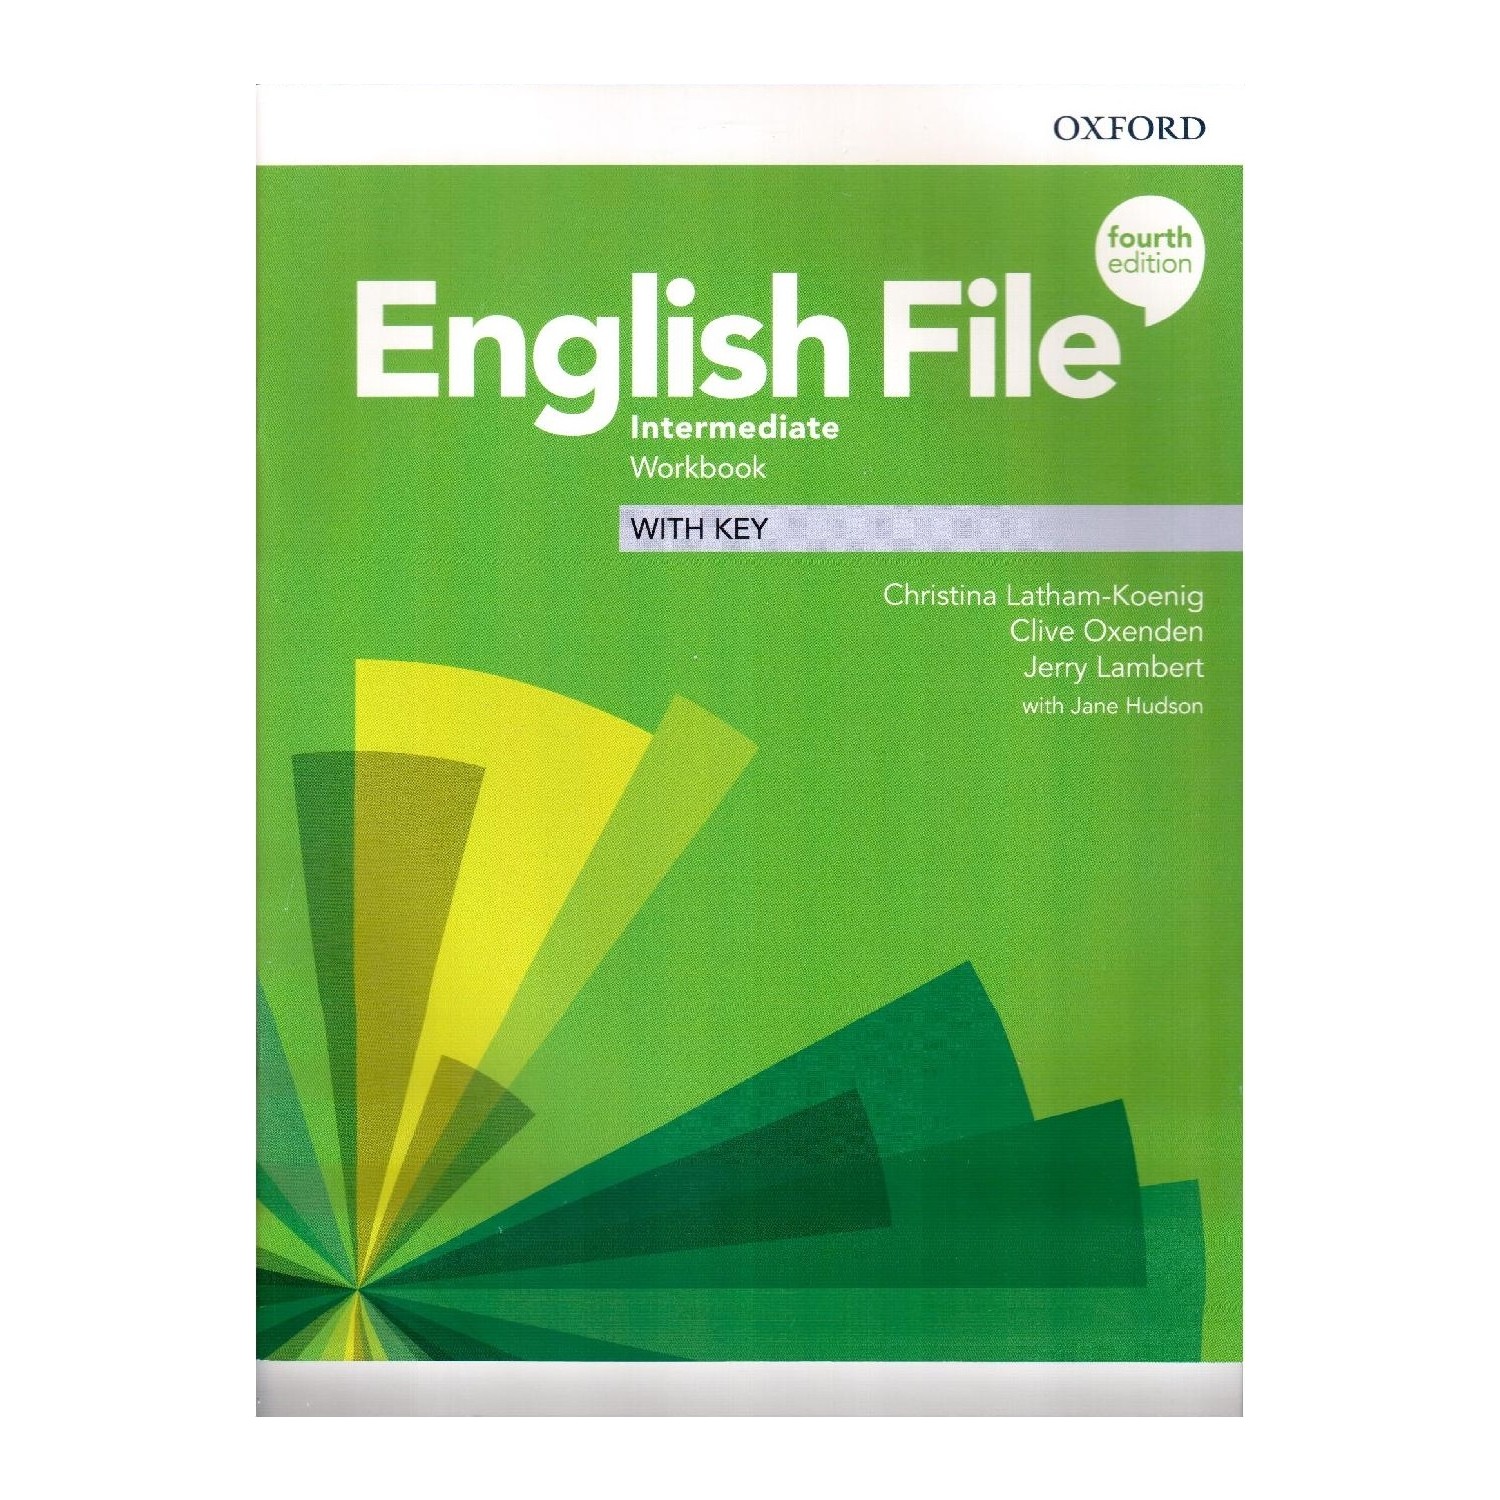 English file 3rd intermediate workbook